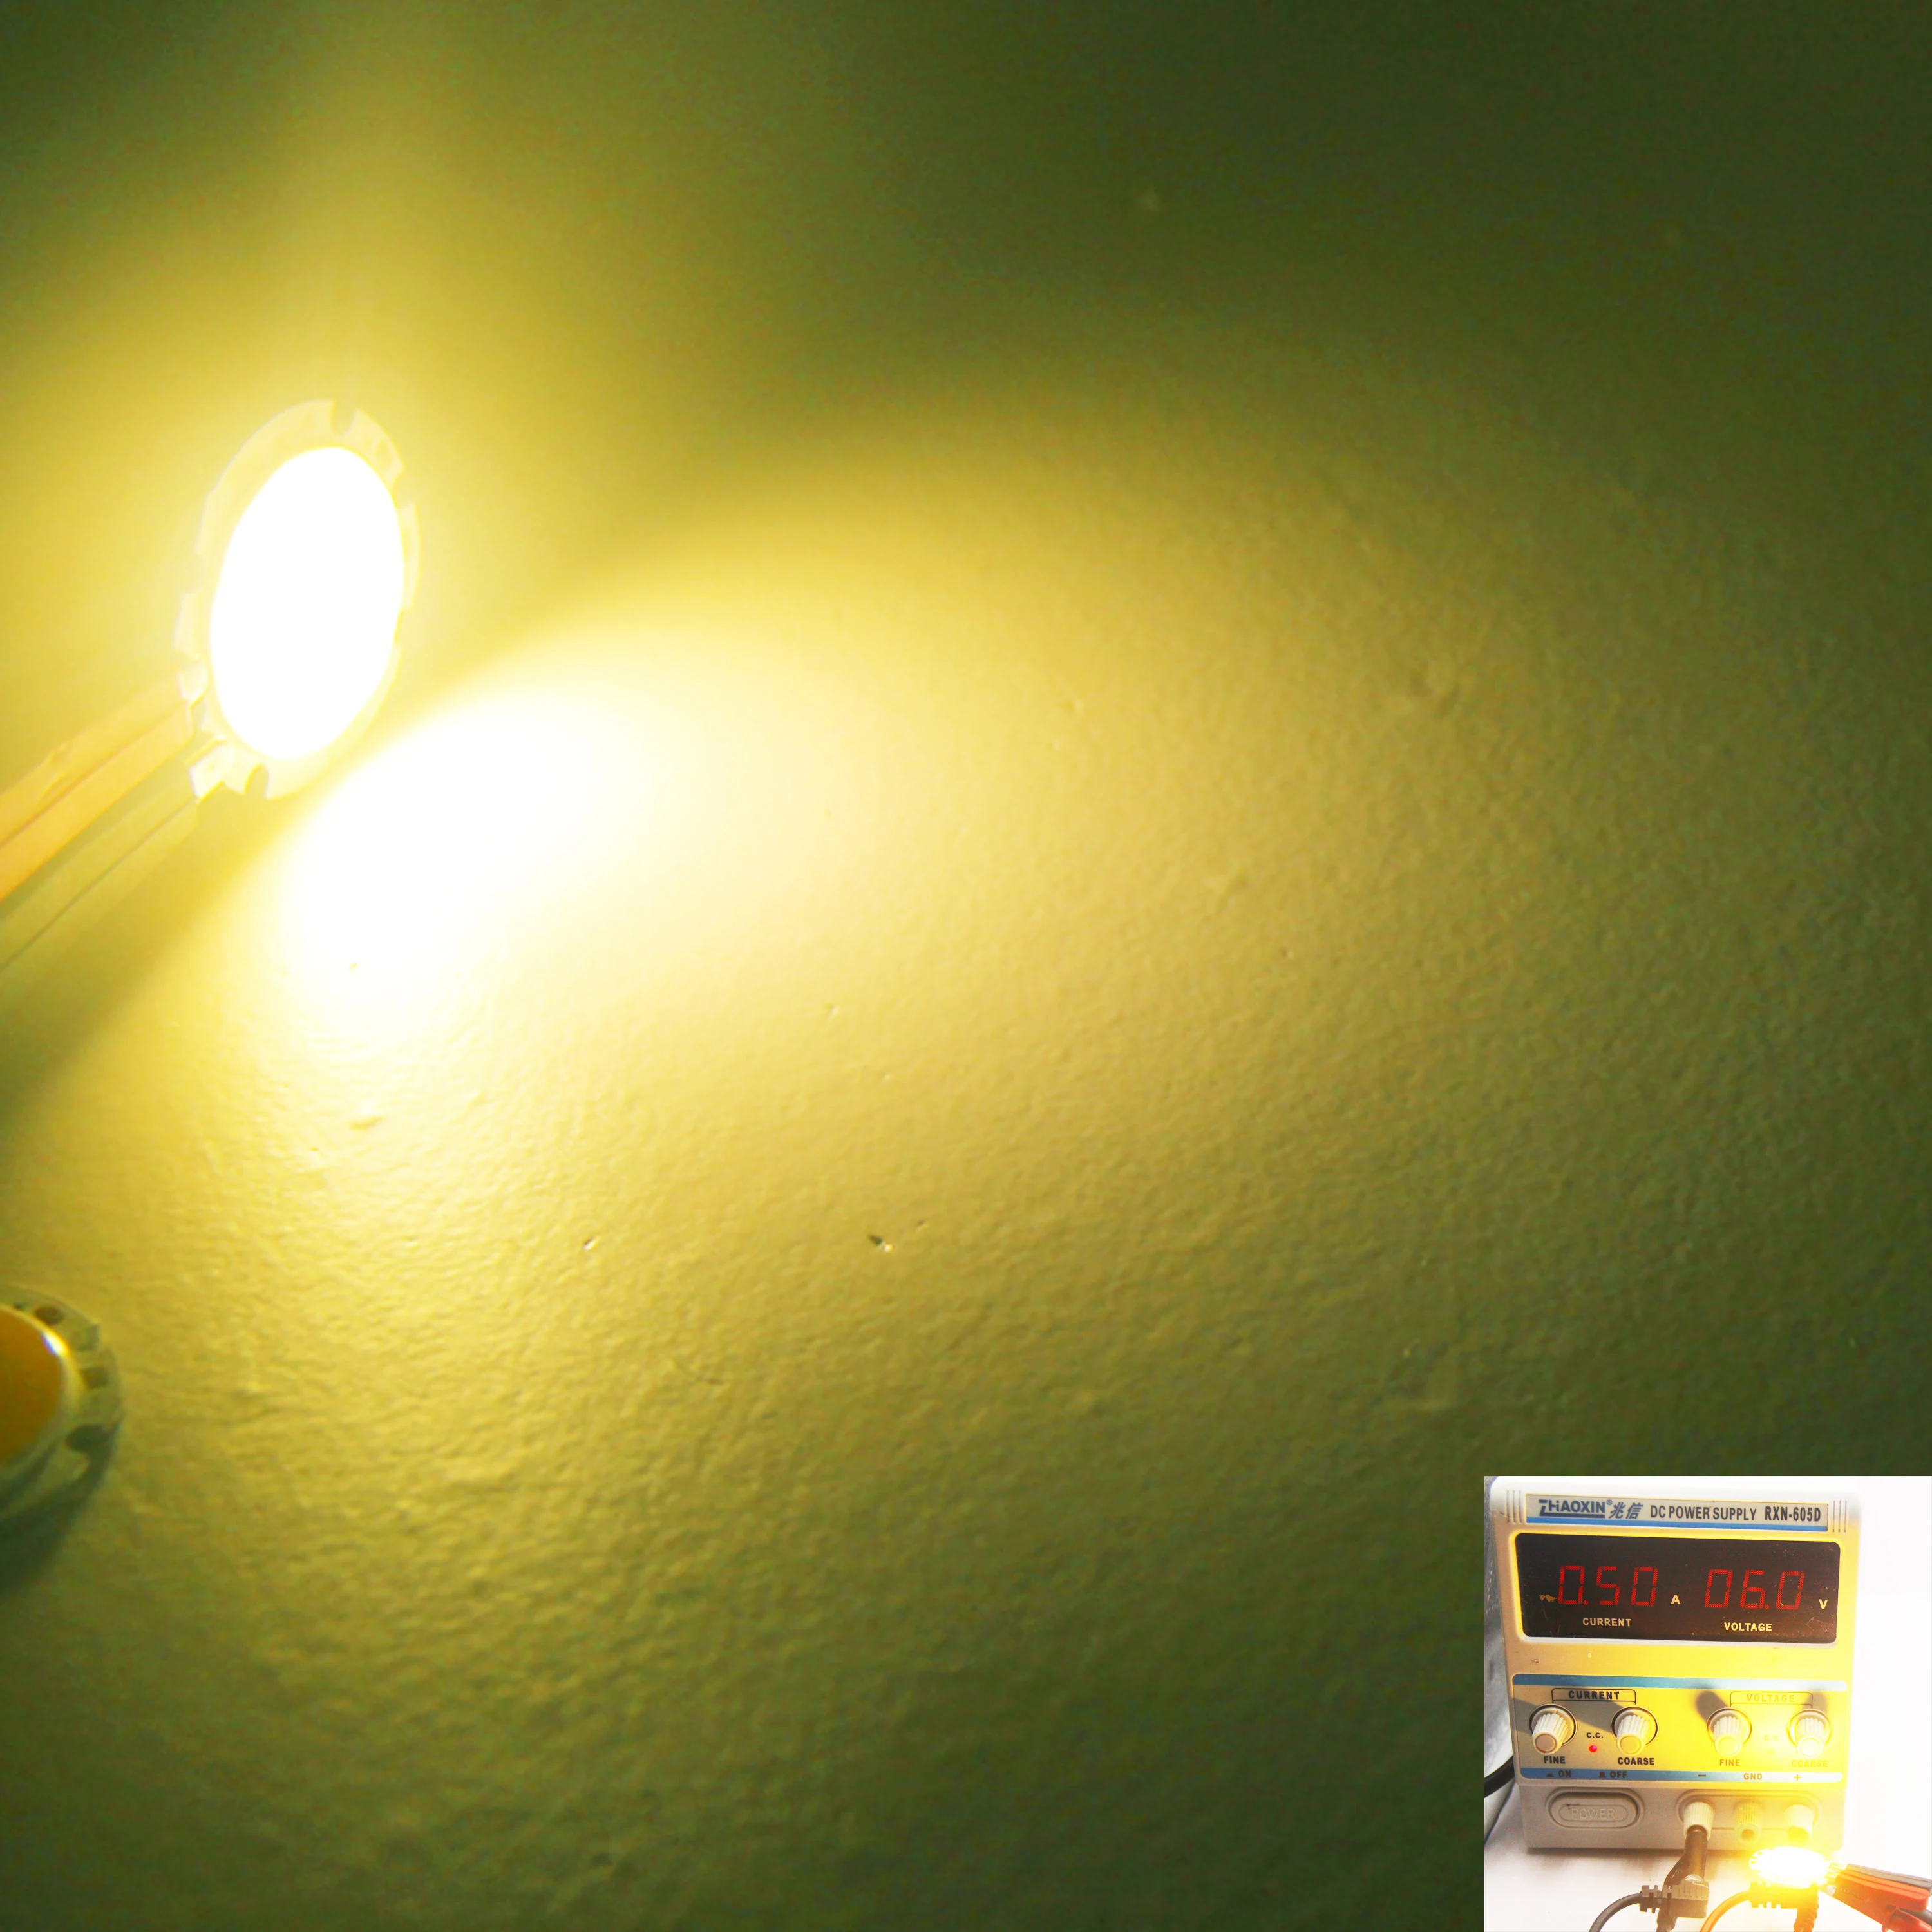 دافئ أبيض LED COB مصدر ضوء لمطعم داخلي ، يأمر الجدول لمبة ، لتقوم بها بنفسك مصباح المنزل ، 30 مللي متر مستديرة ، 3 واط ، 6 فولت تيار مستمر ، 500mA ، 3000K ، Ra80 ، جديد